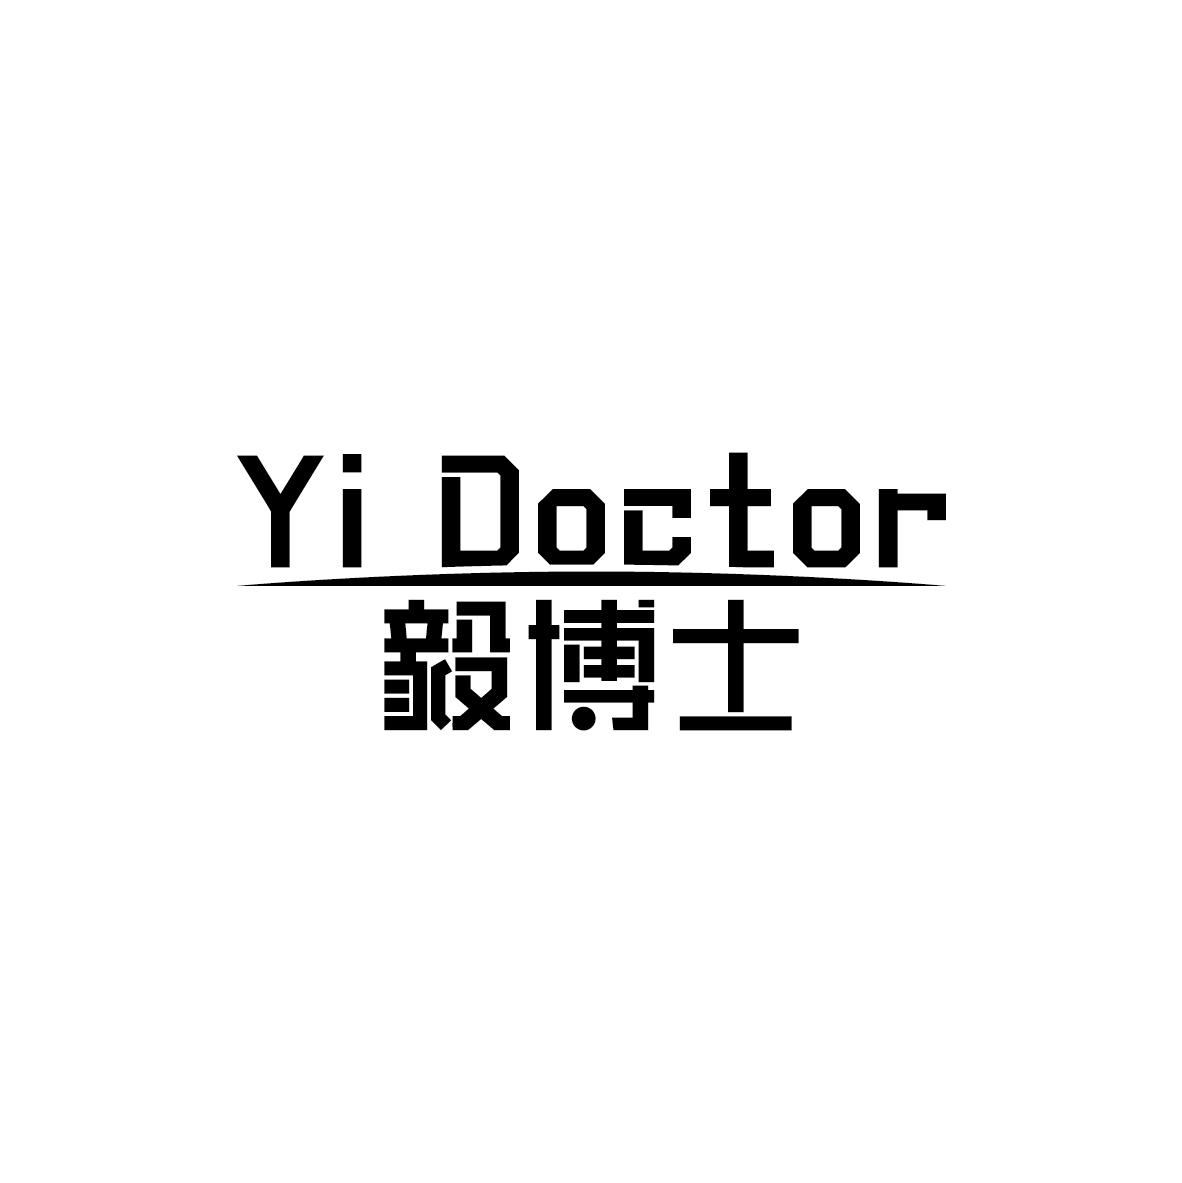 转让商标-YI DOCTOR 毅博士